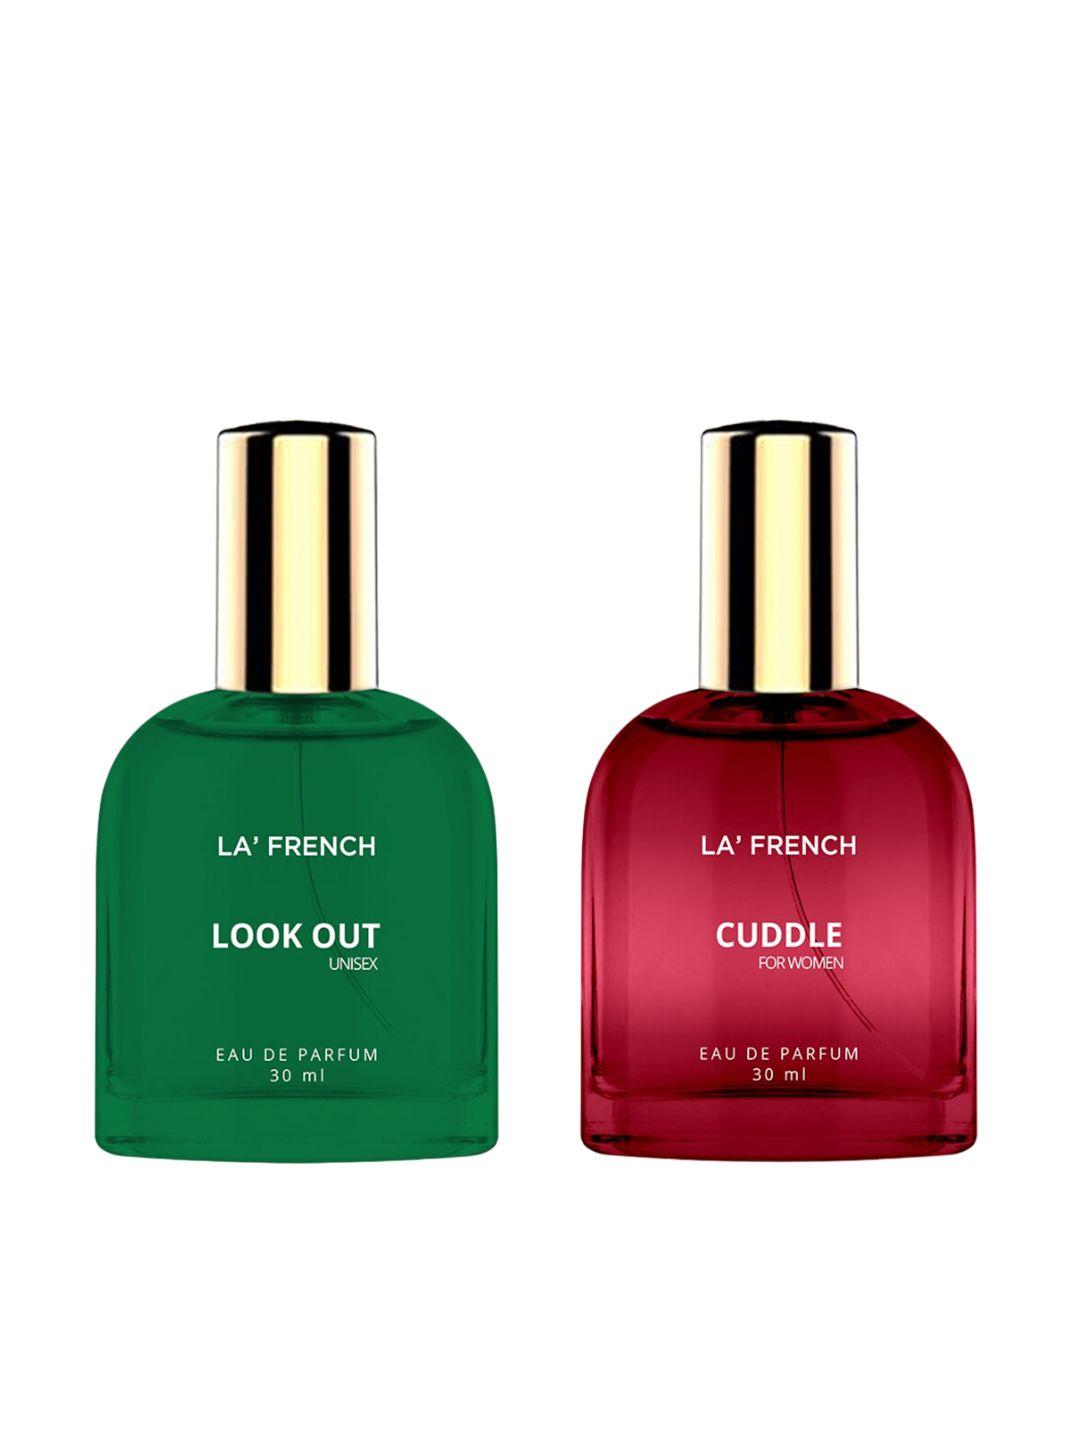 la french 2-pcs look out & cuddle long lasting eau de parfum - 30ml each